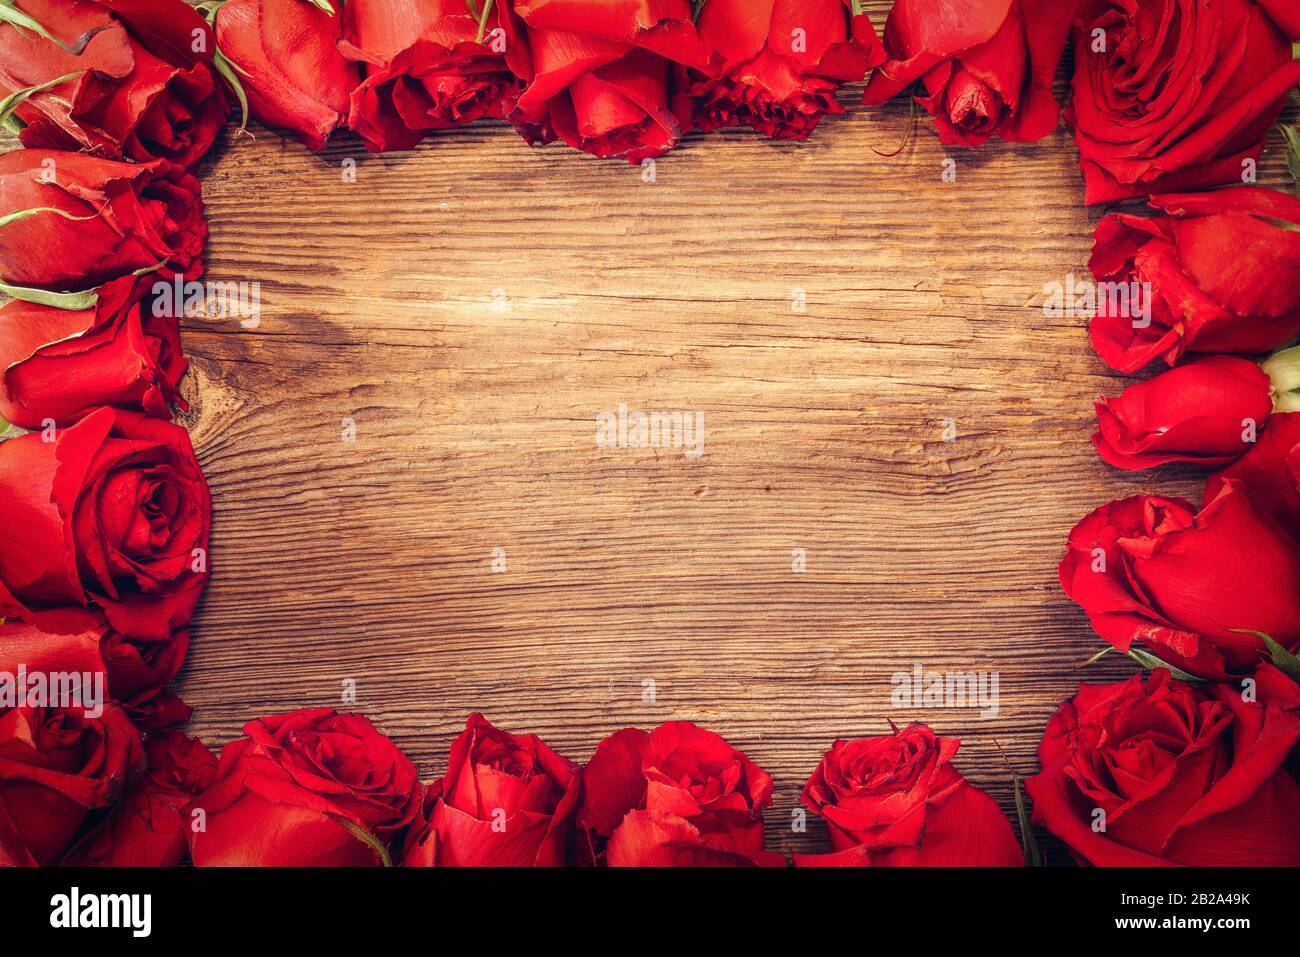 Rahmen mit scharlachroten Rosen für Valentinstag Verzierungen Konzept mit Holzhintergrund. Liebe und Romantik Stockfoto